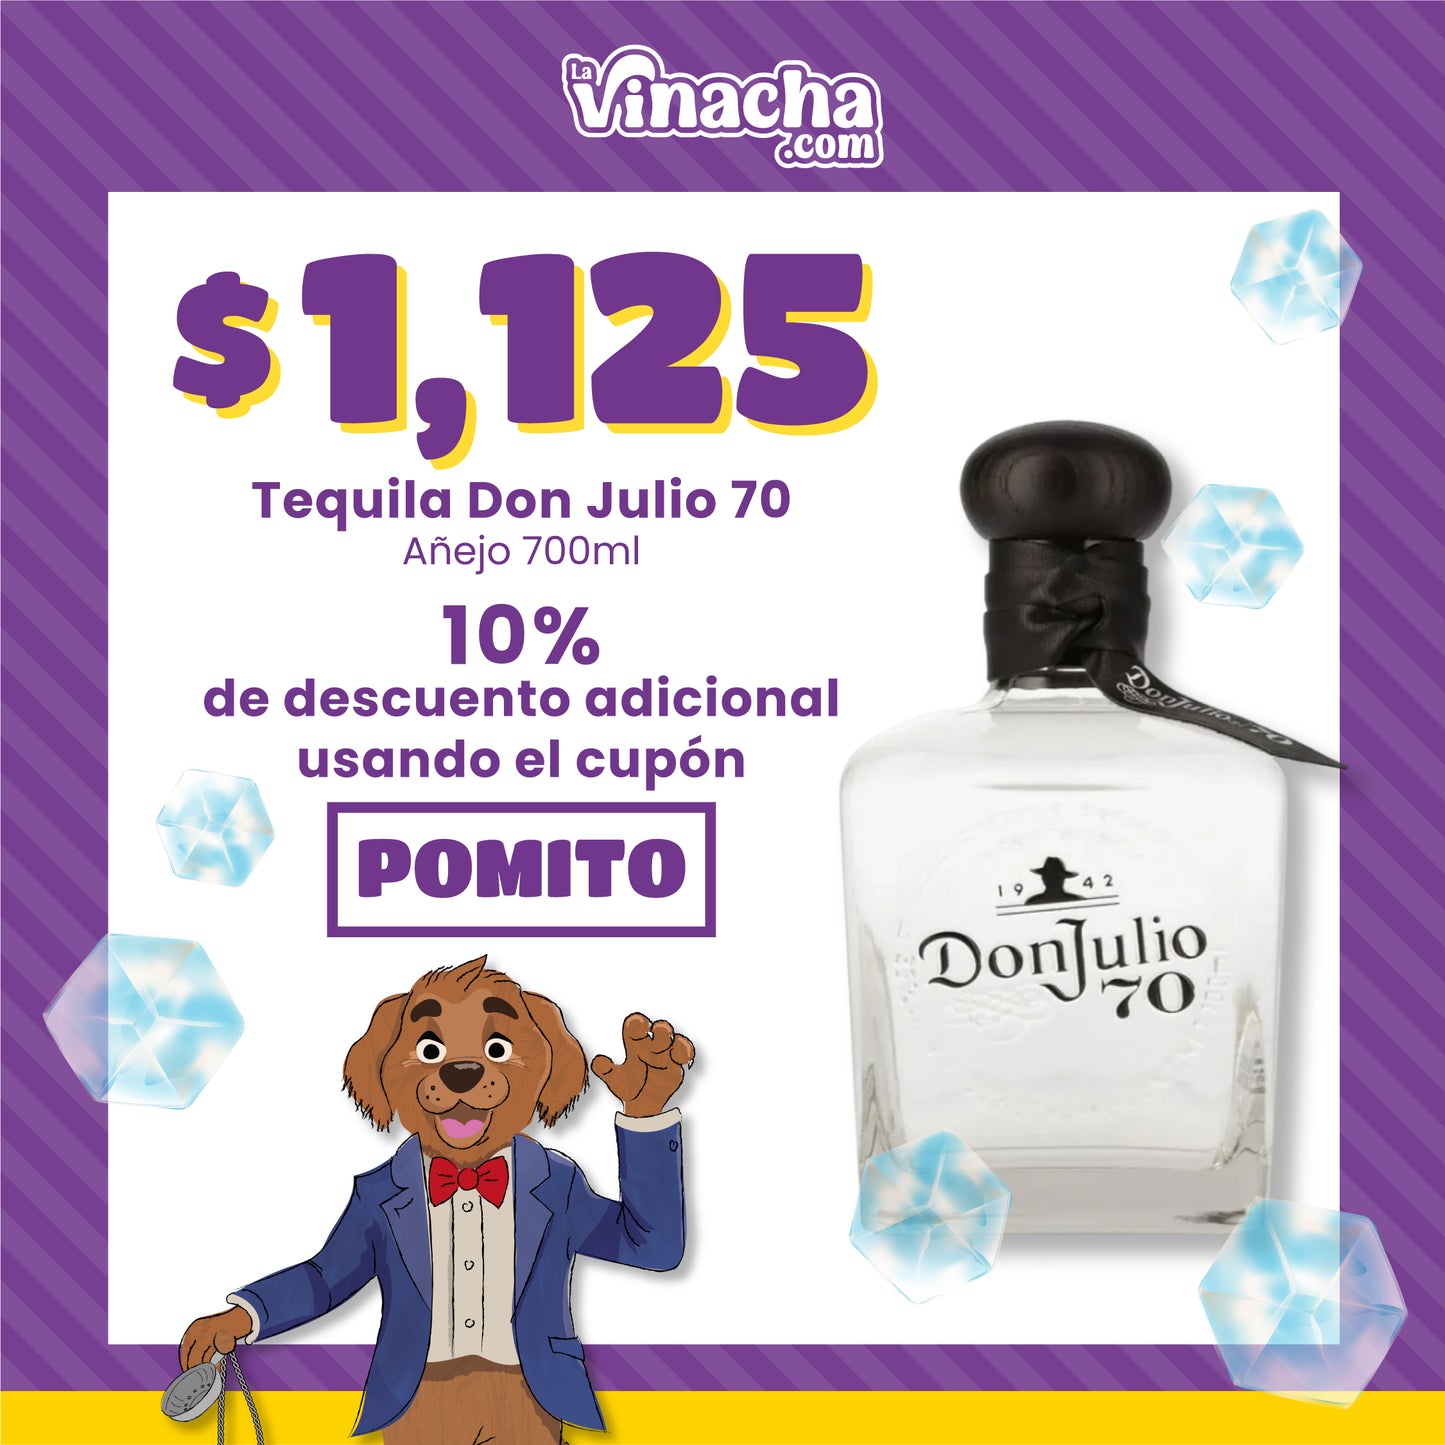 Tequila Don Julio 70 Añejo 700ml